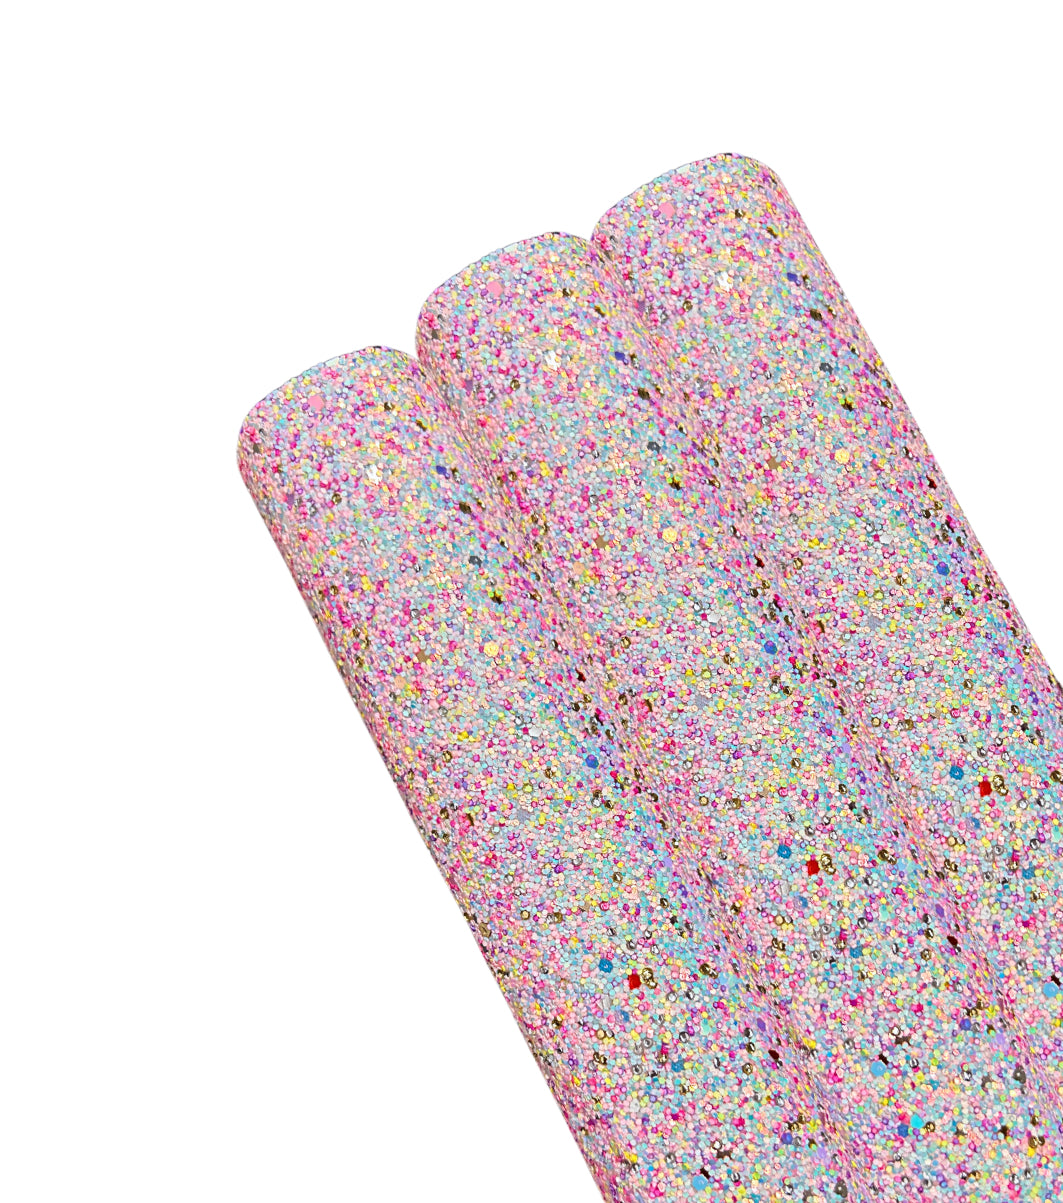 Rainbow sprinkles premium chunky glitter fabric A4